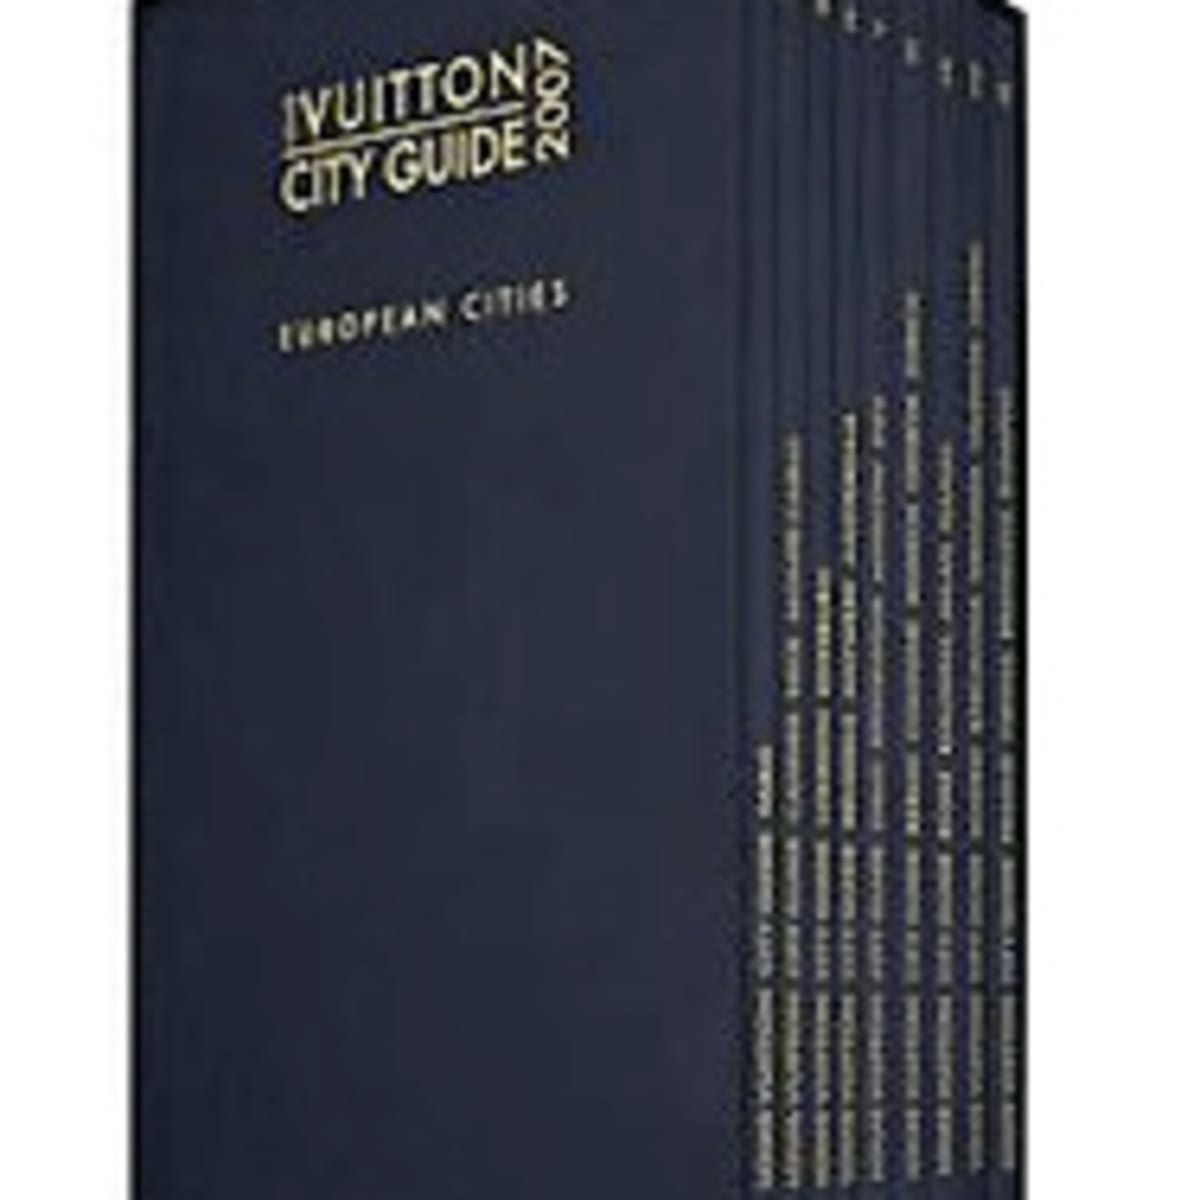 Louis Vuitton's 2014 City Guides